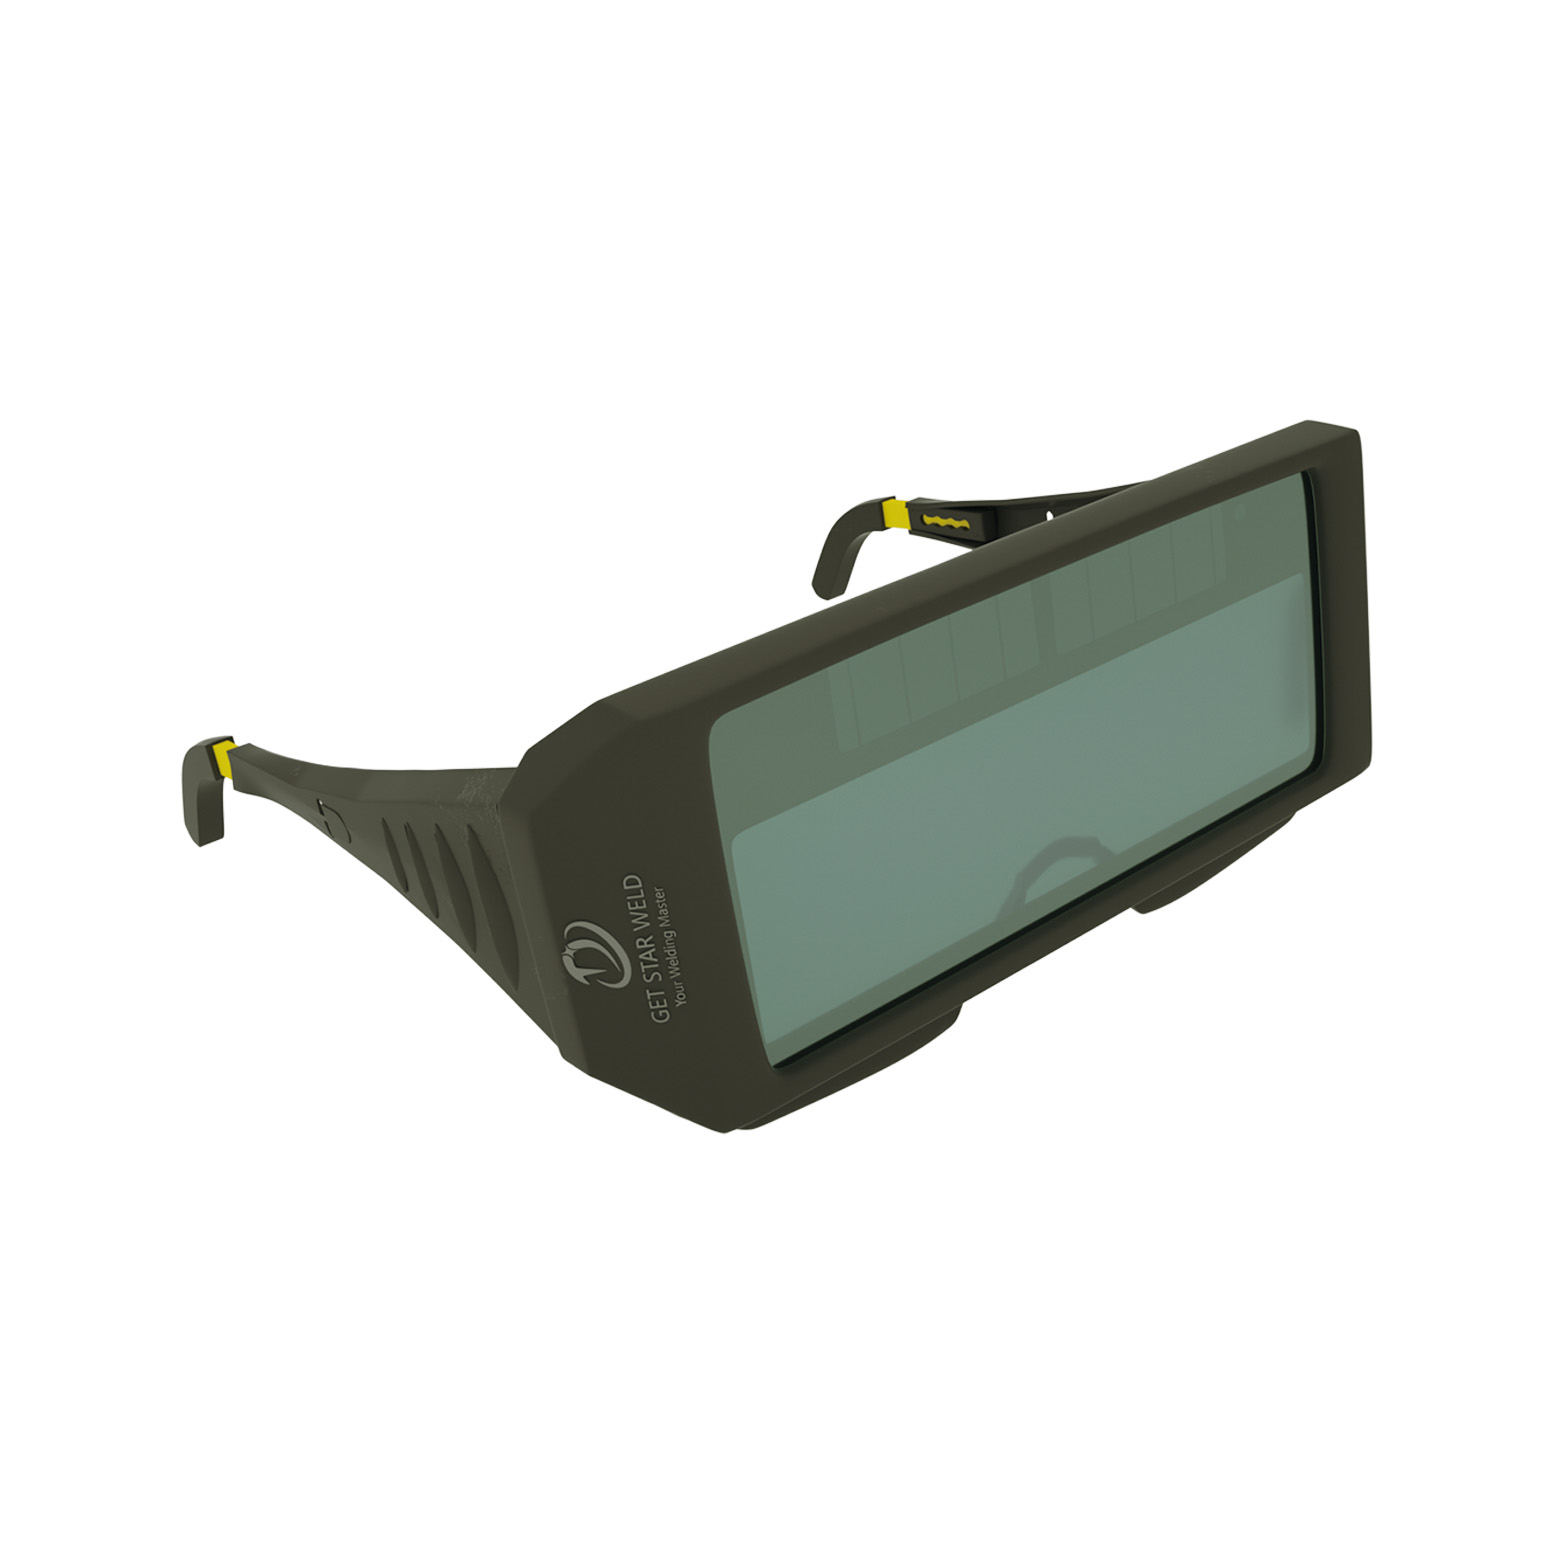 Get Star Weld Solar Powered Auto-Darkening Welding Glasses GS-3008